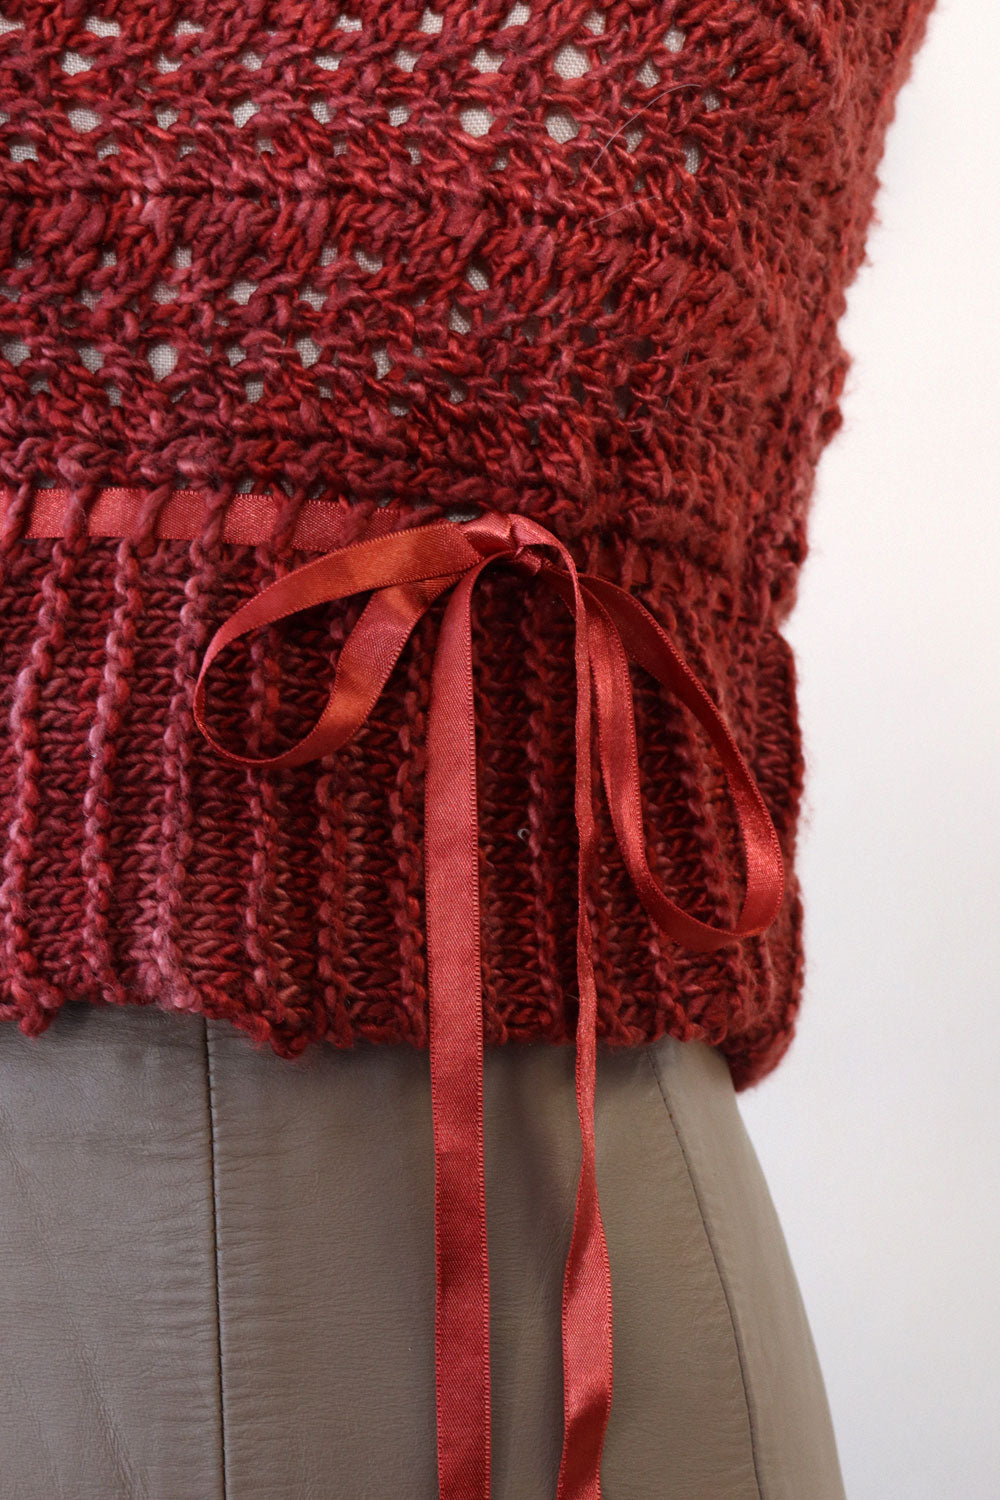 Berry Knit Ribboned Sweater XS-M